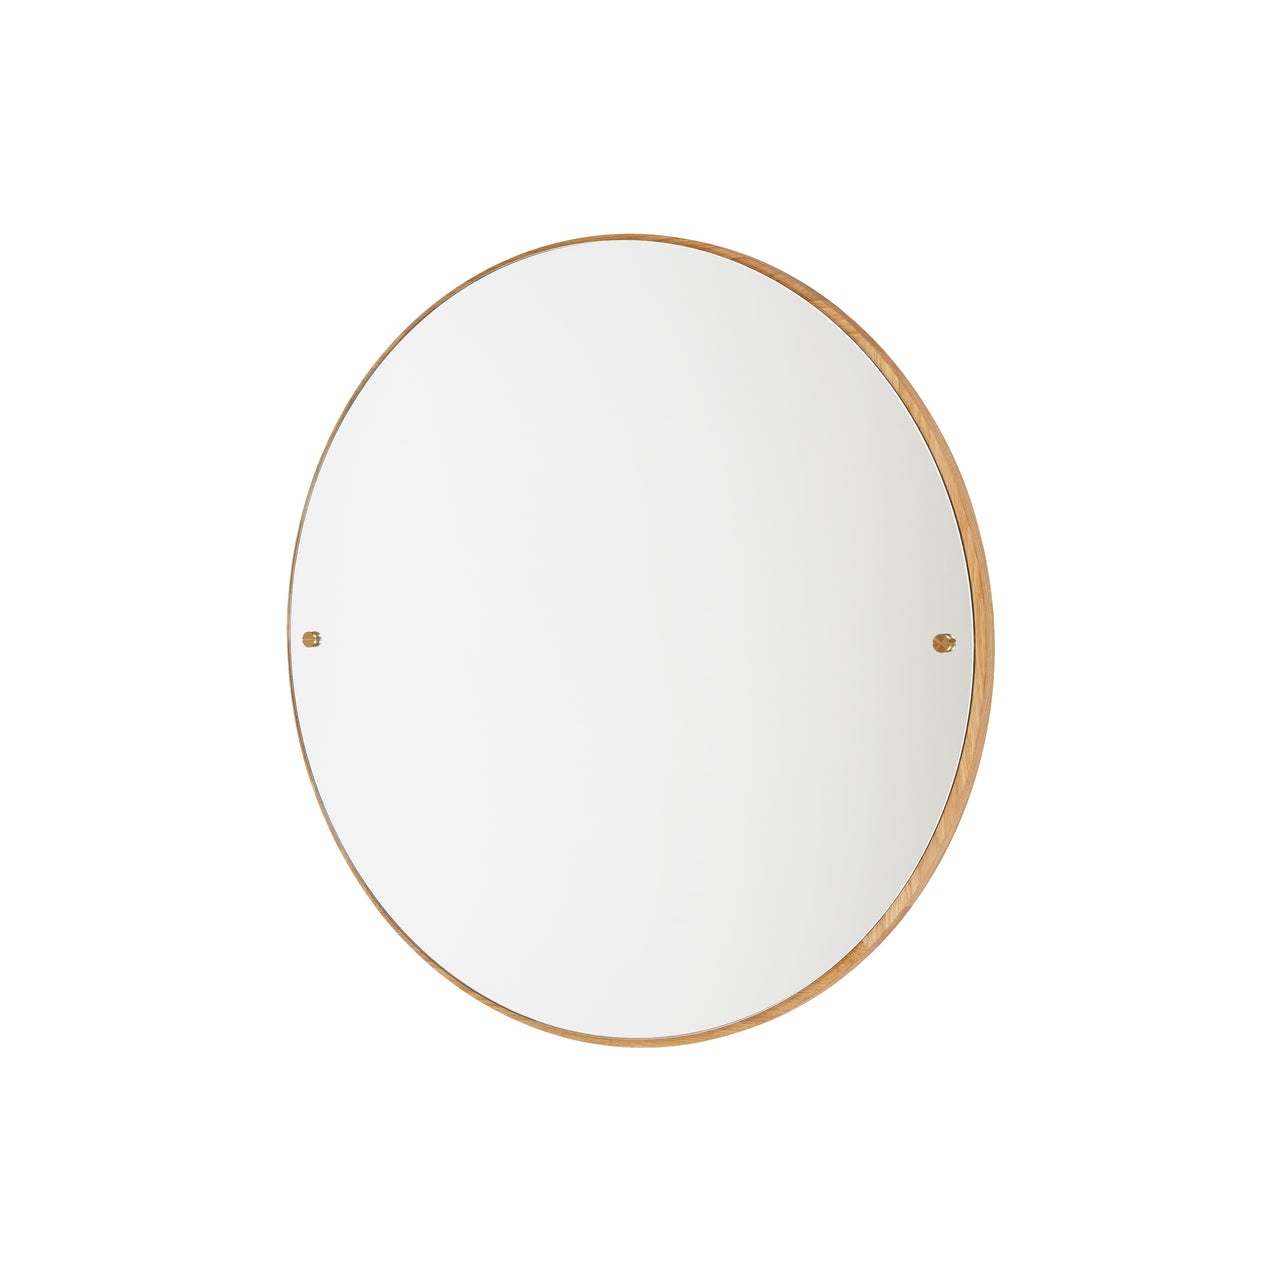 CM-1 Circle Mirror: Large - 29.5